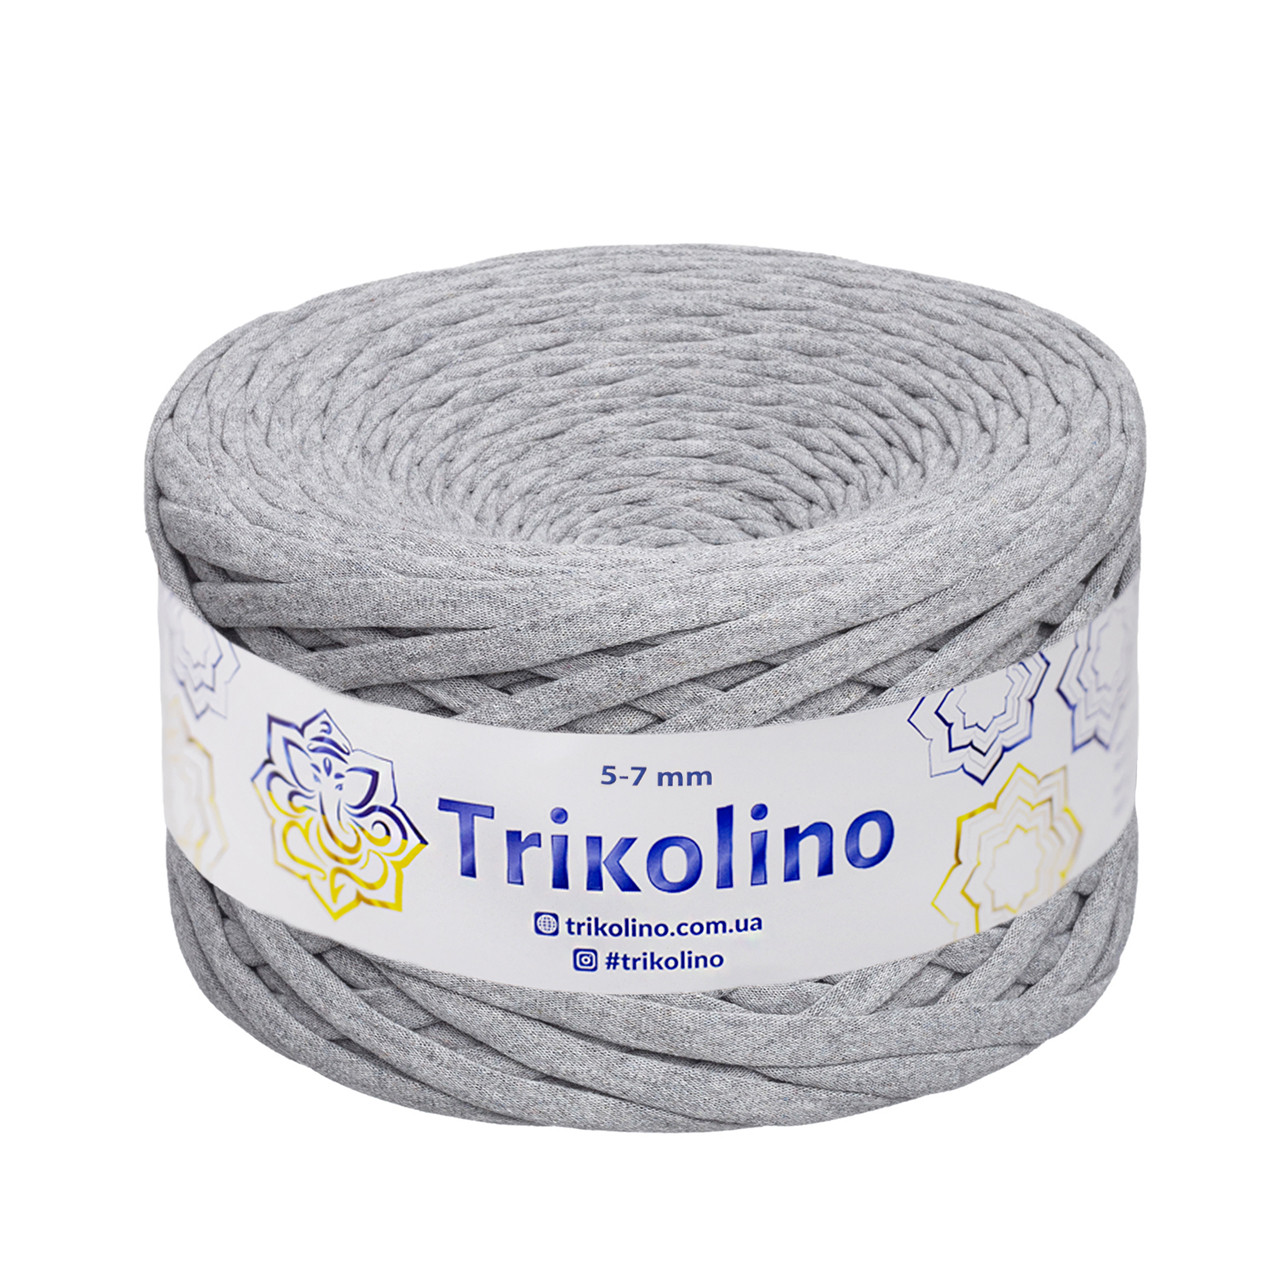 Трикотажна пряжа Trikolino, 5-7 мм., 100 м., Сірий меланж, нитки для в'язання